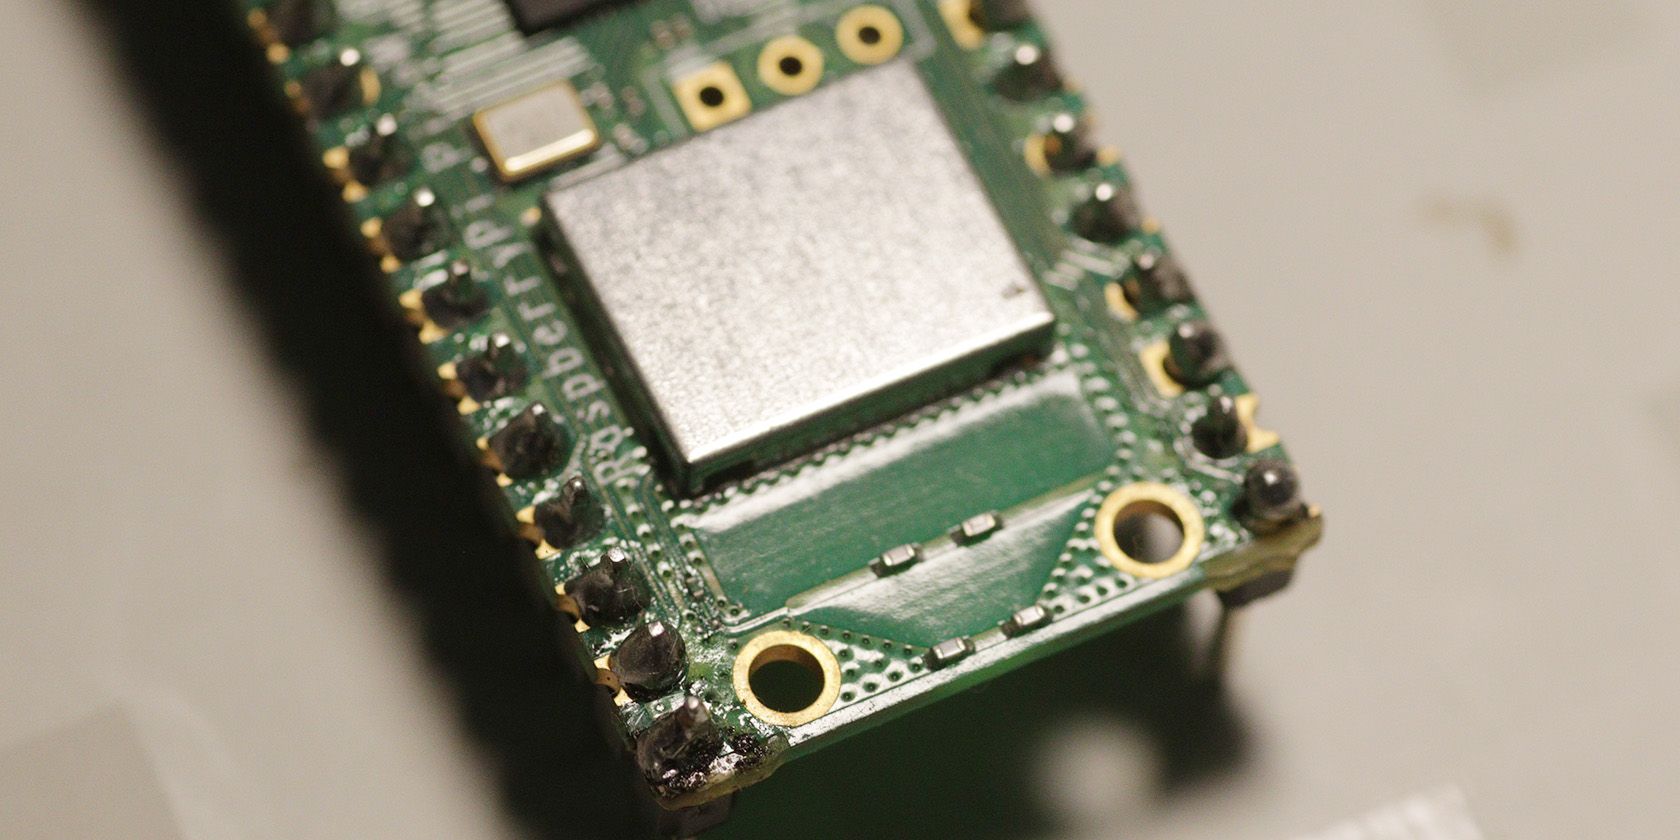 Chip WiFi của Raspberry Pi Pico W với dấu vết ăng-ten